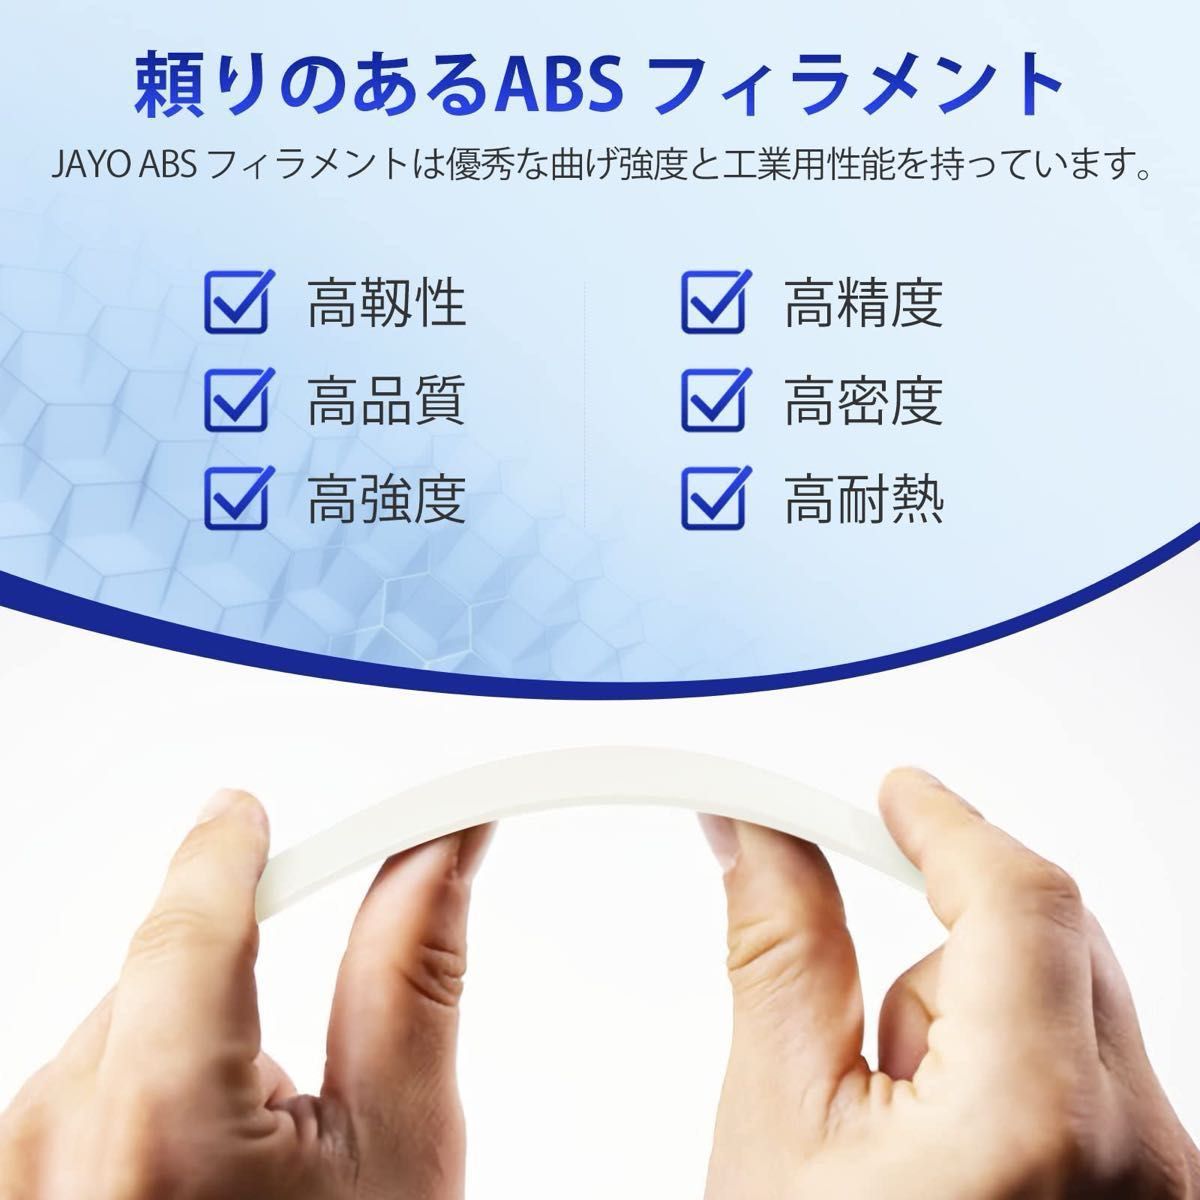 JAYO ABS 3Dプリンターフィラメント 1.75ｍｍ 寸法精度 +/- 0.02mm 650g   ABS造形材料  グレー